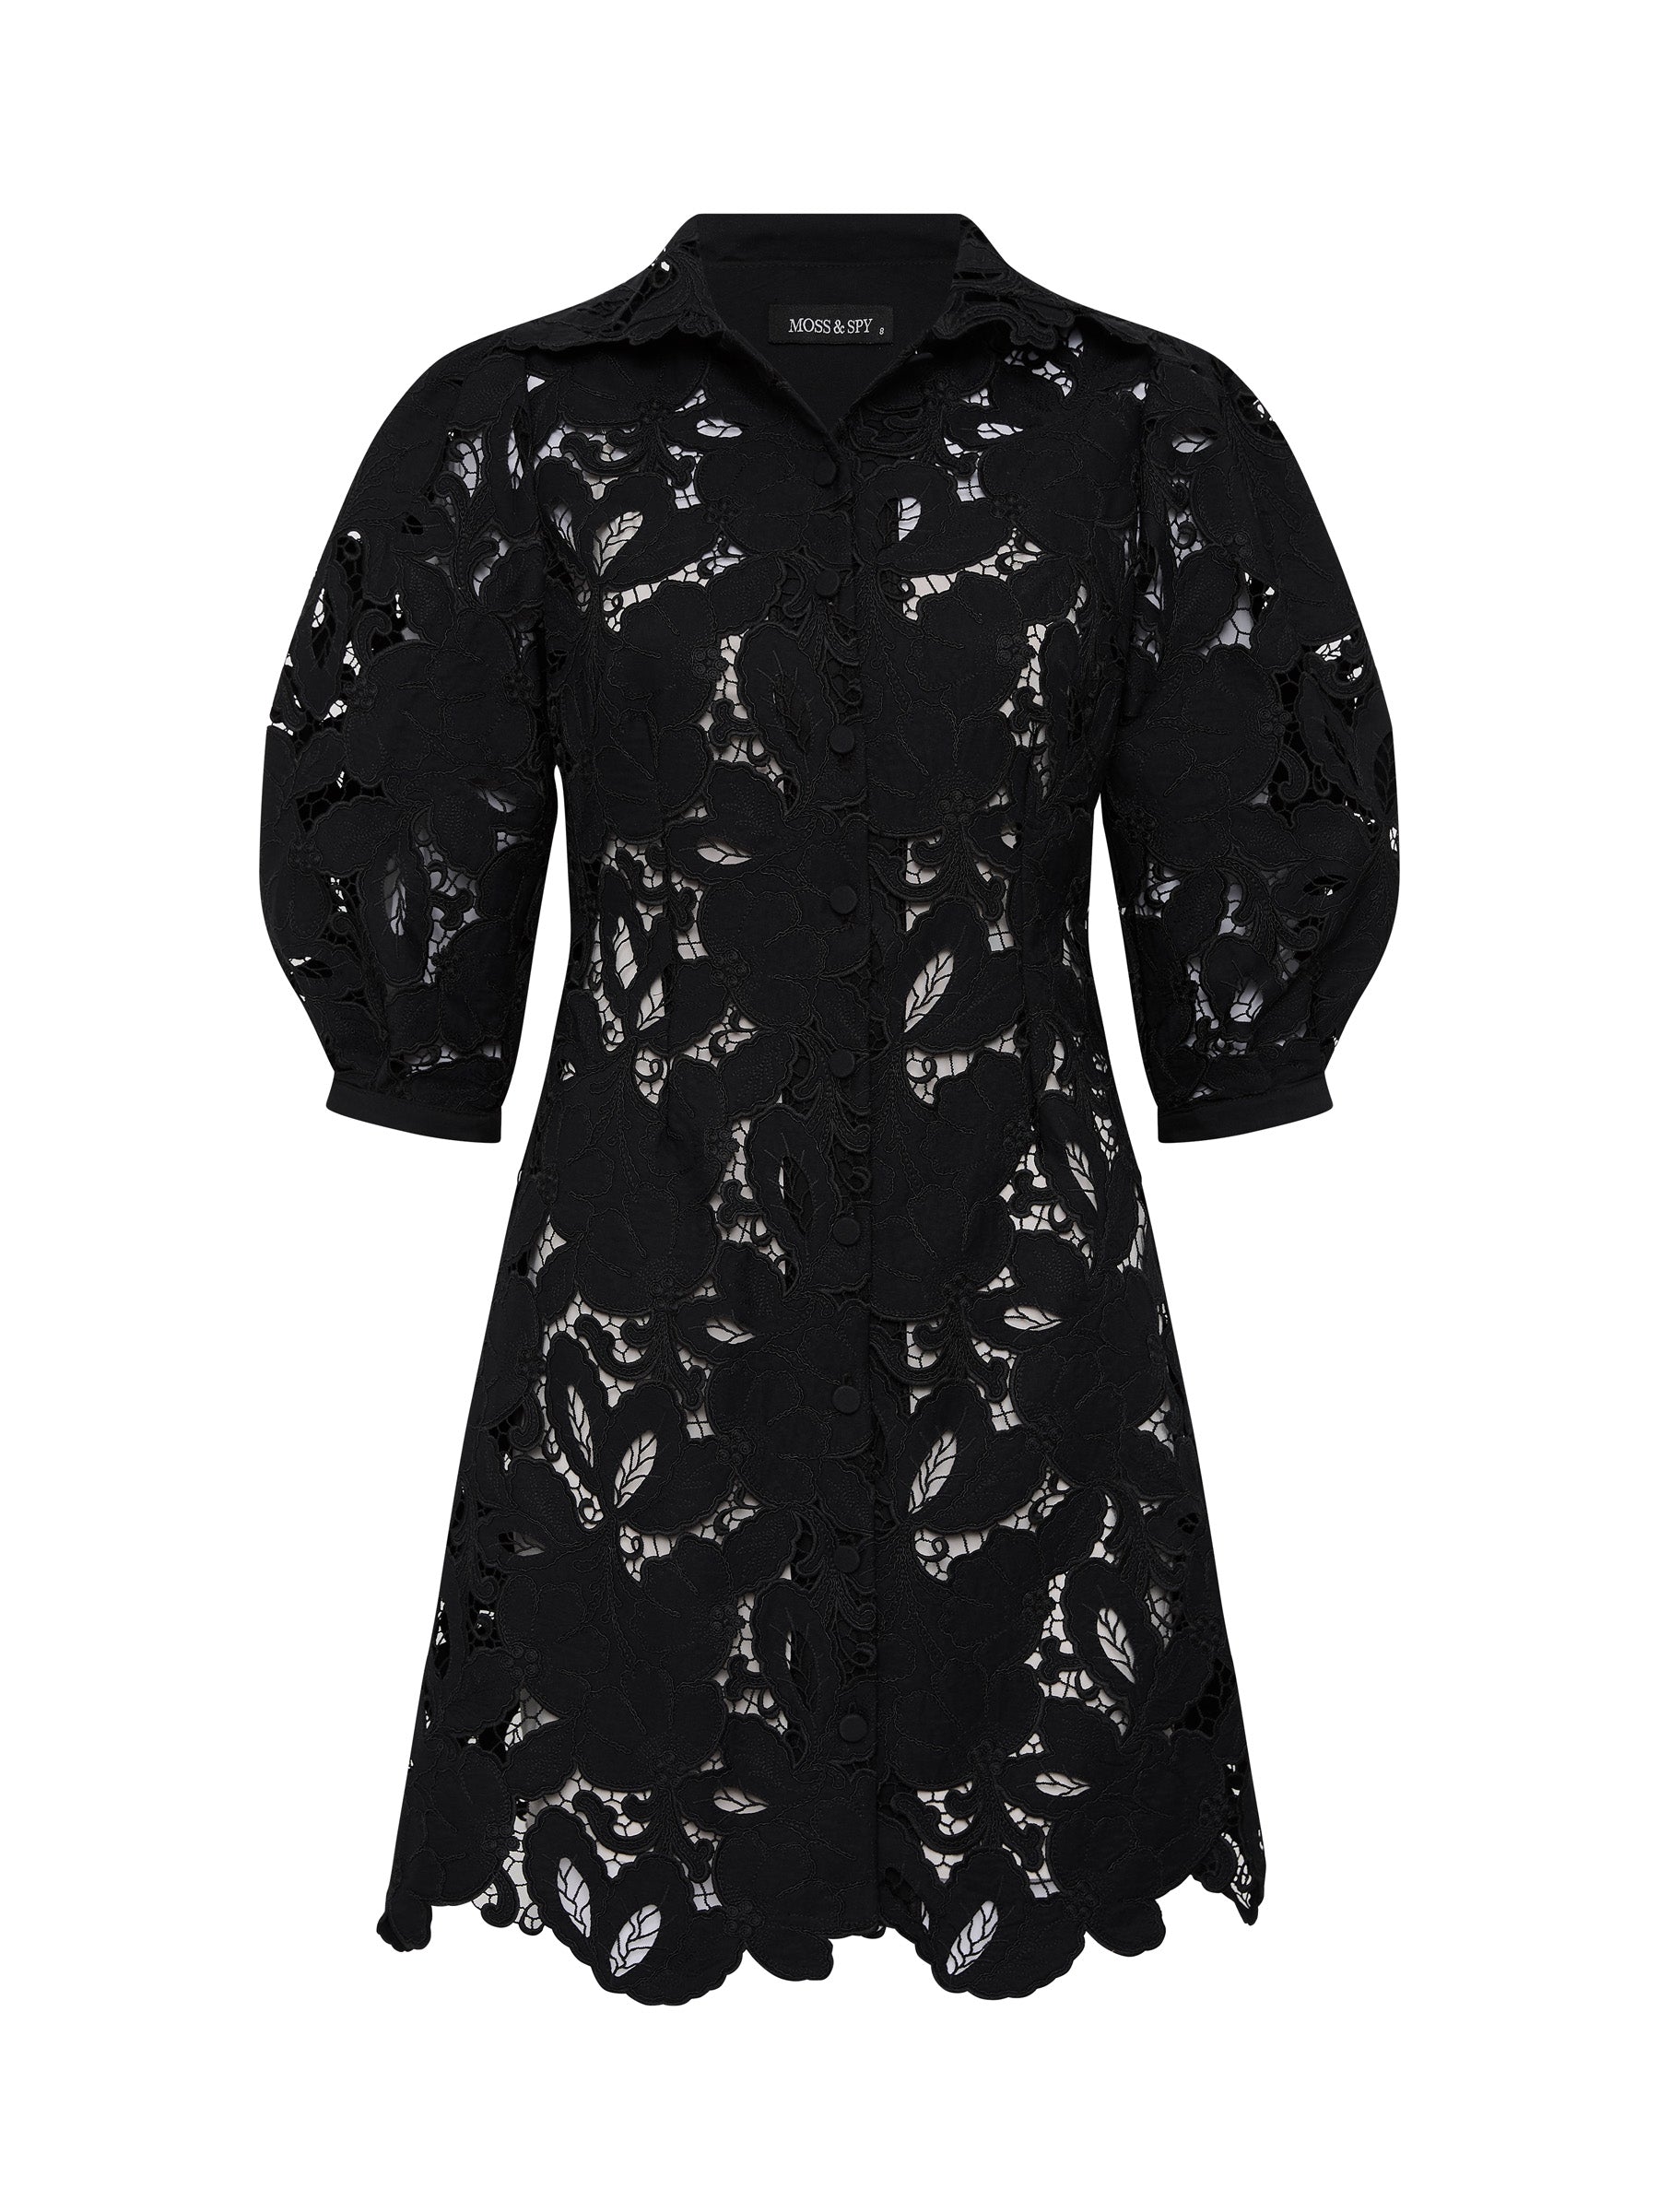 Monte Carlo Mini Shirt Dress - Black (Size 8 + 10 Only)